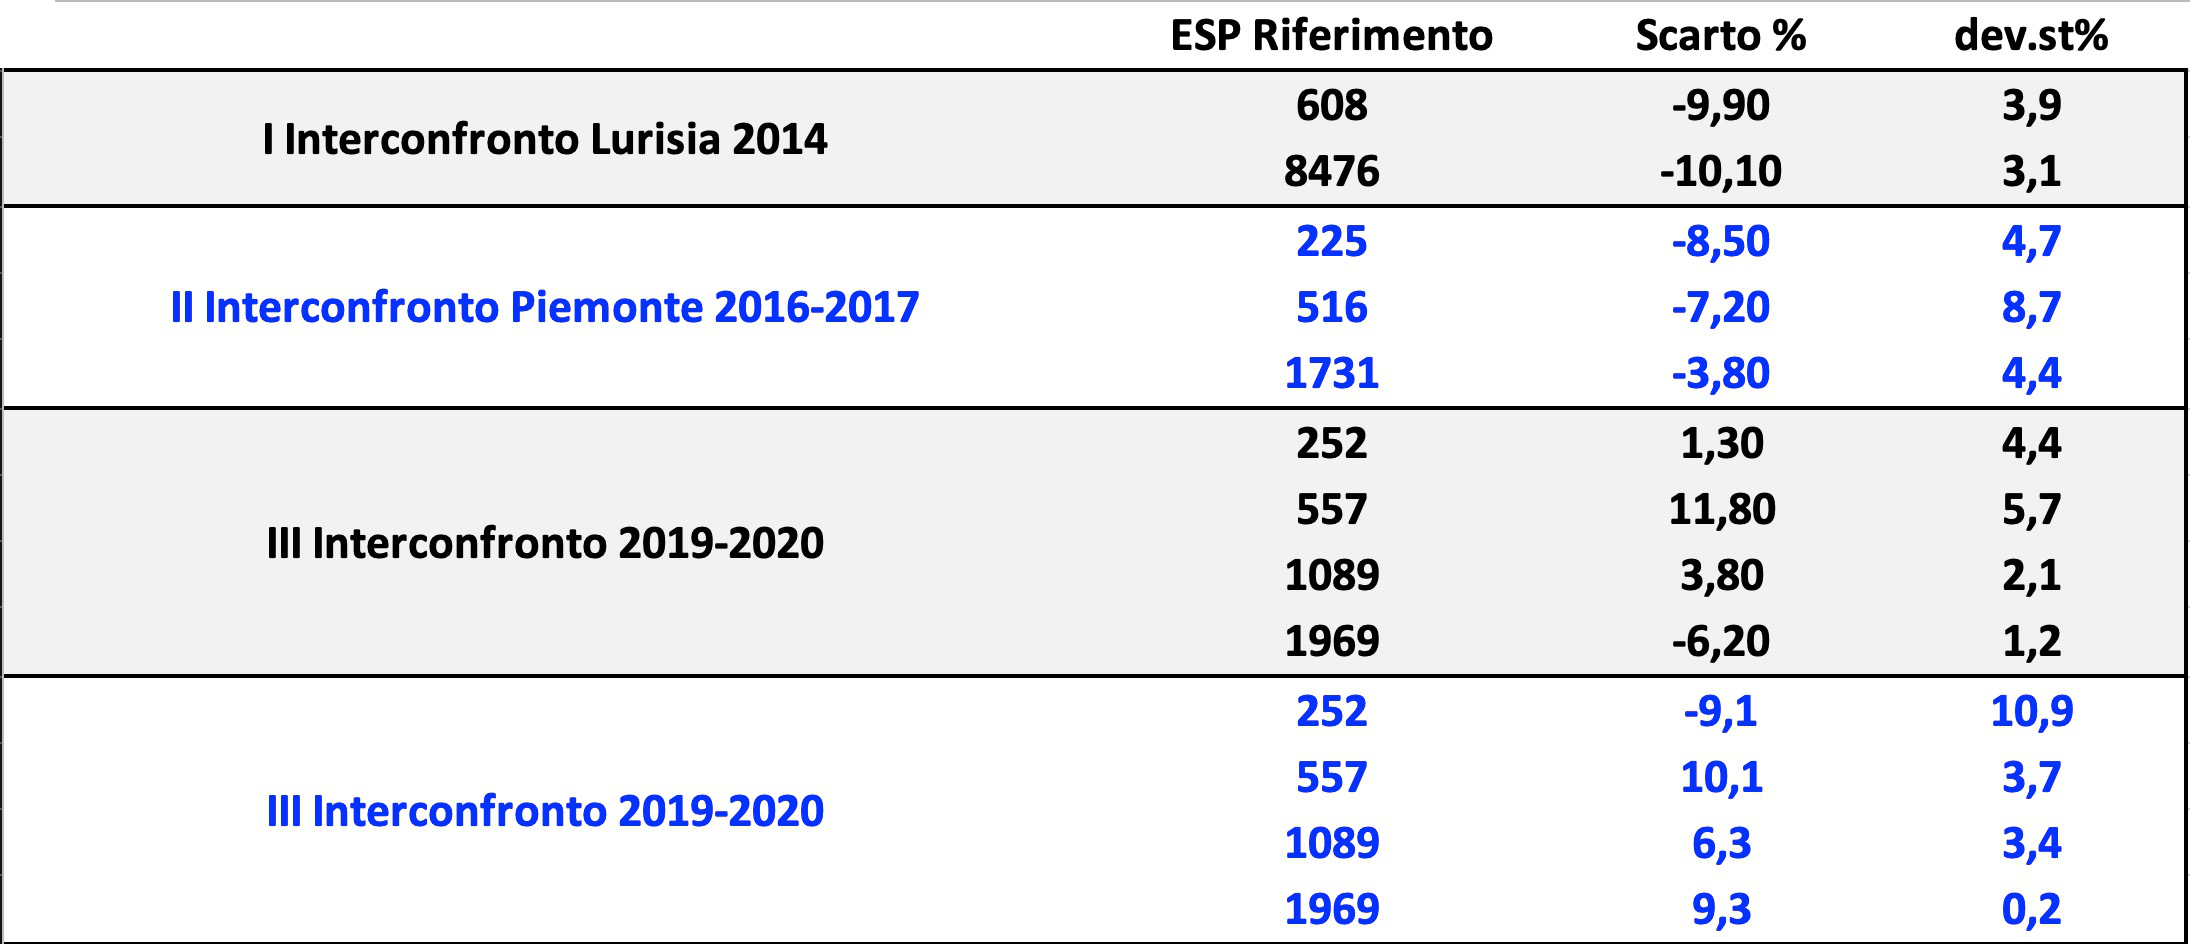 Interconfronti+Campo-Risultati-2021-05-21+at+10.16.50+AM